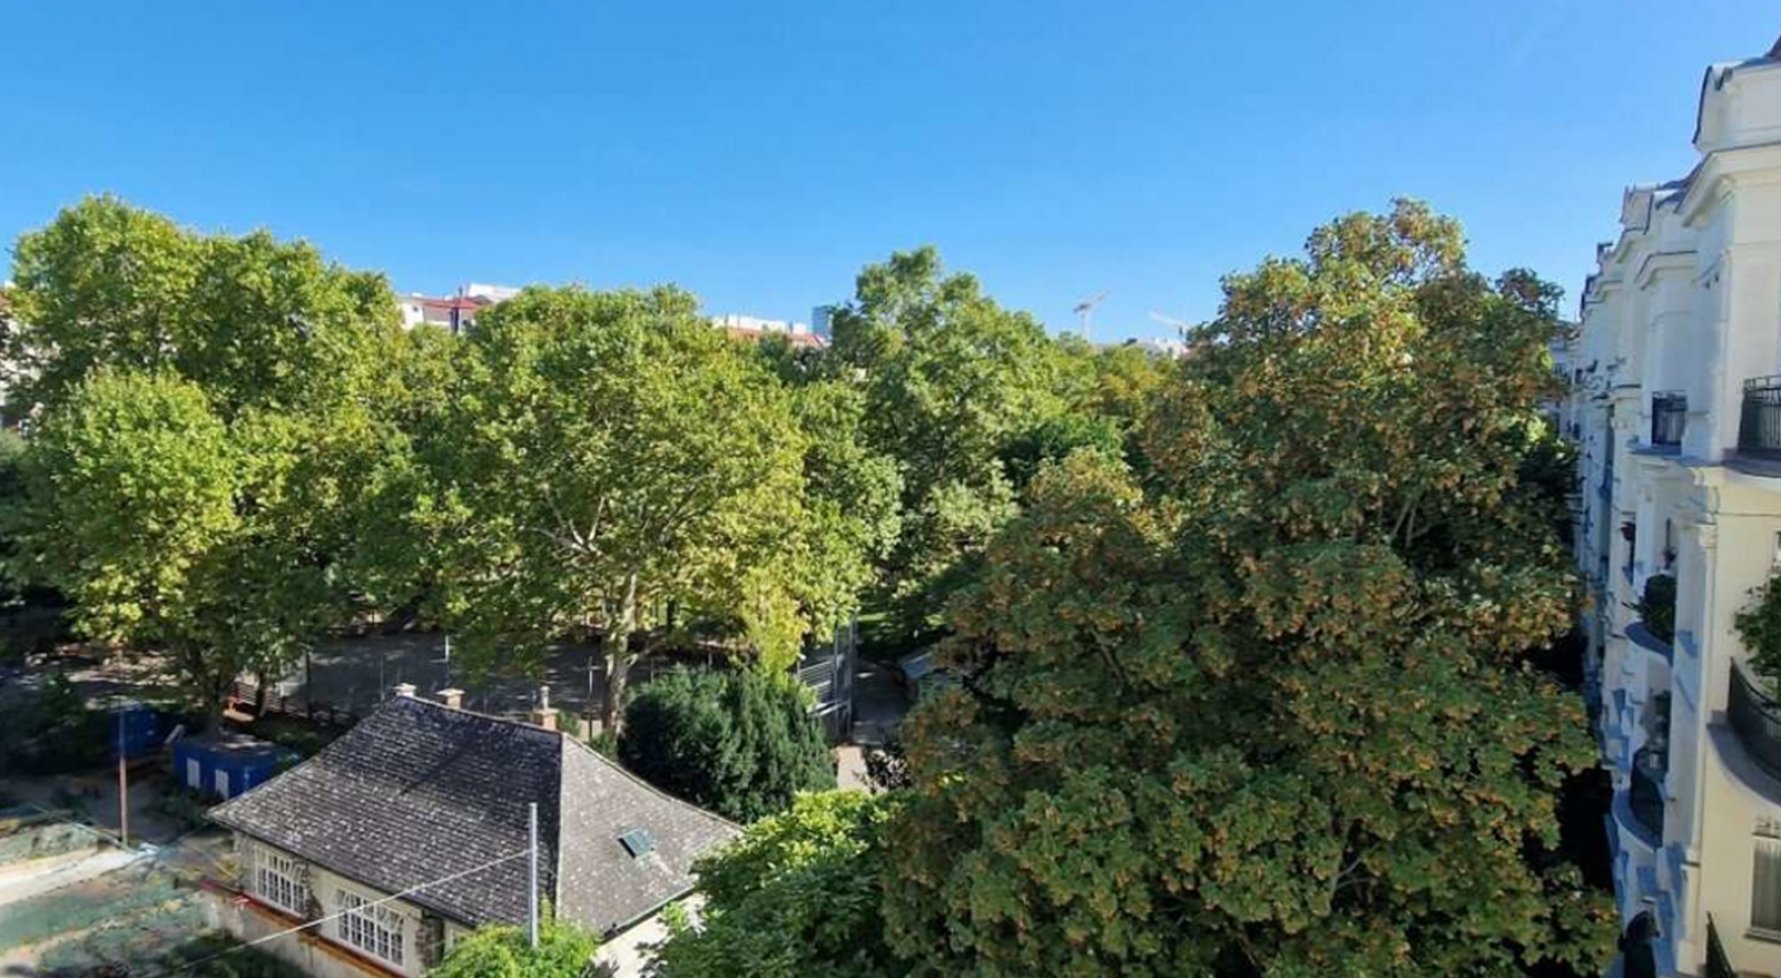 Immobilie in 1040 Wien, 4. Bezirk: Elegante 4-Zimmer-Wohnung mit wunderbarem Grünblick in den Park! - bild 1